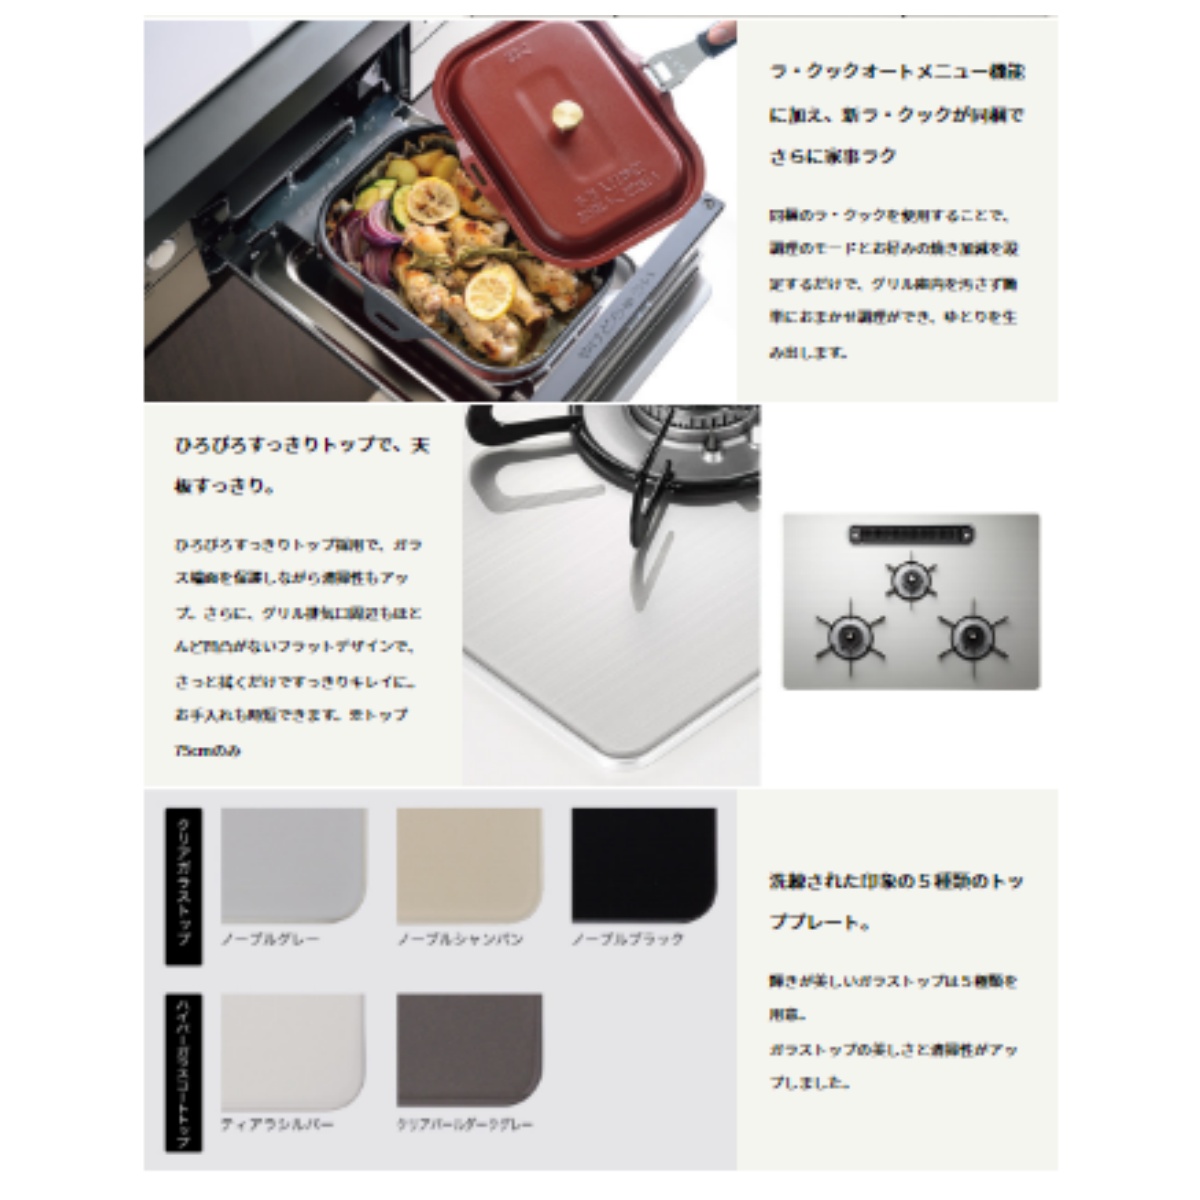 日本メーカー新品 PD-821WS-60GJ-A13 パロマ 左右強火力 ワイドグリル 自動炊飯機能 温度キープ機能 煮込み・煮もの機能  ラ・クック対応 都市ガス 煮込み・煮もの機能 ガステーブル、コンロ